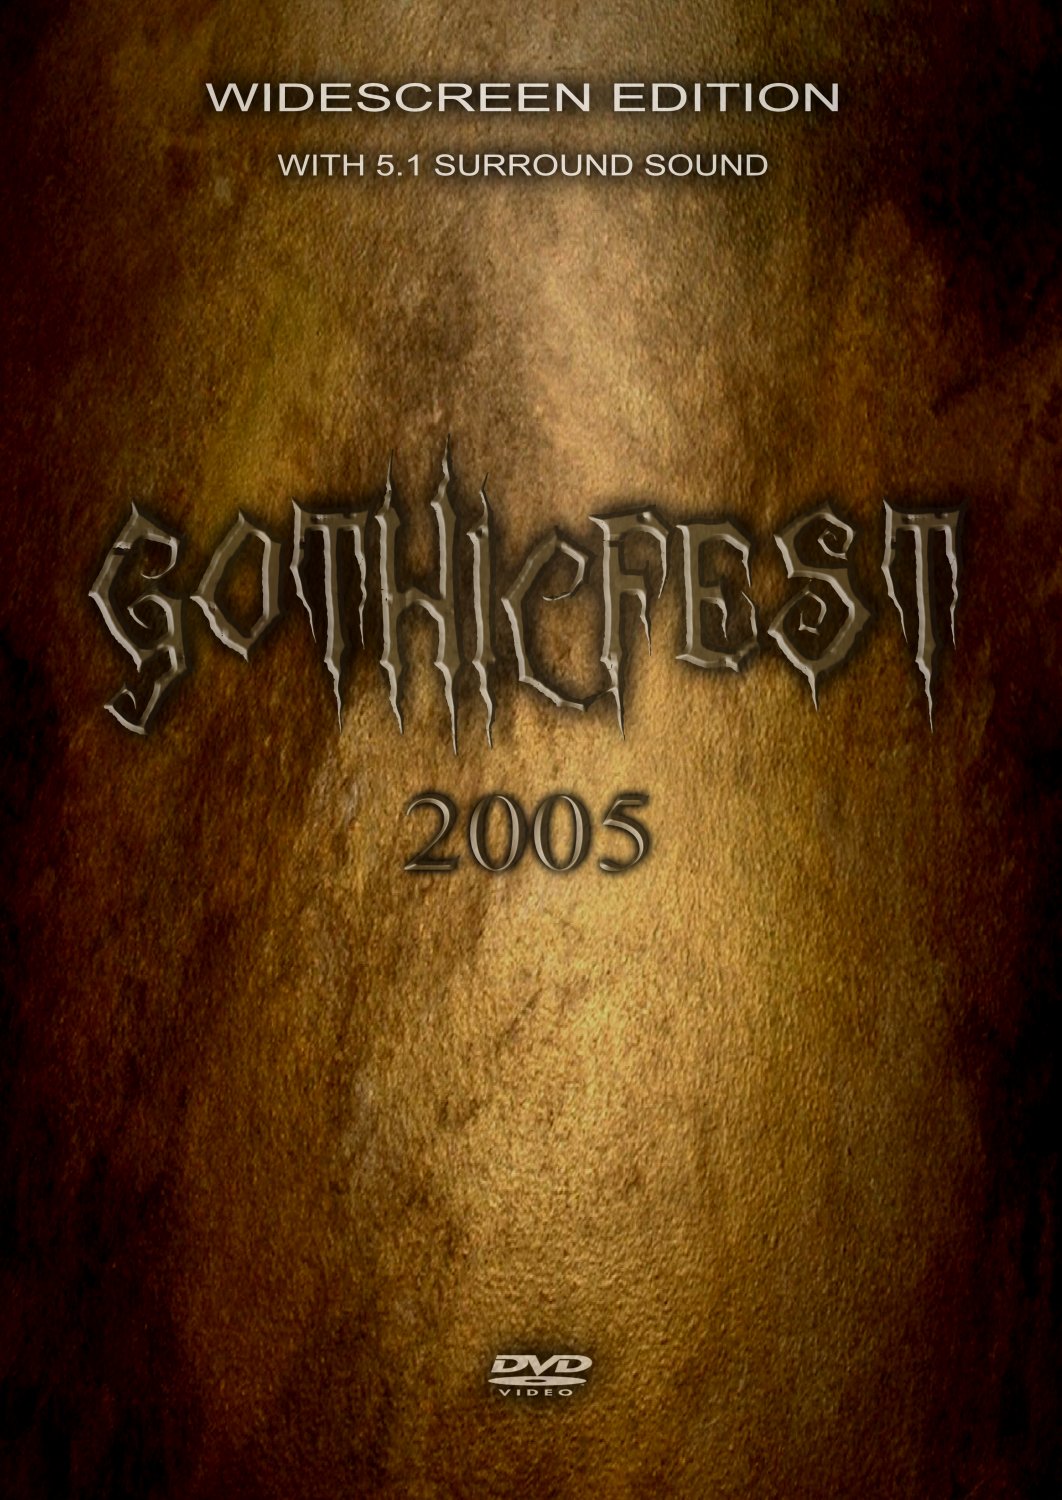 Gothicfest 2005 (DVD)